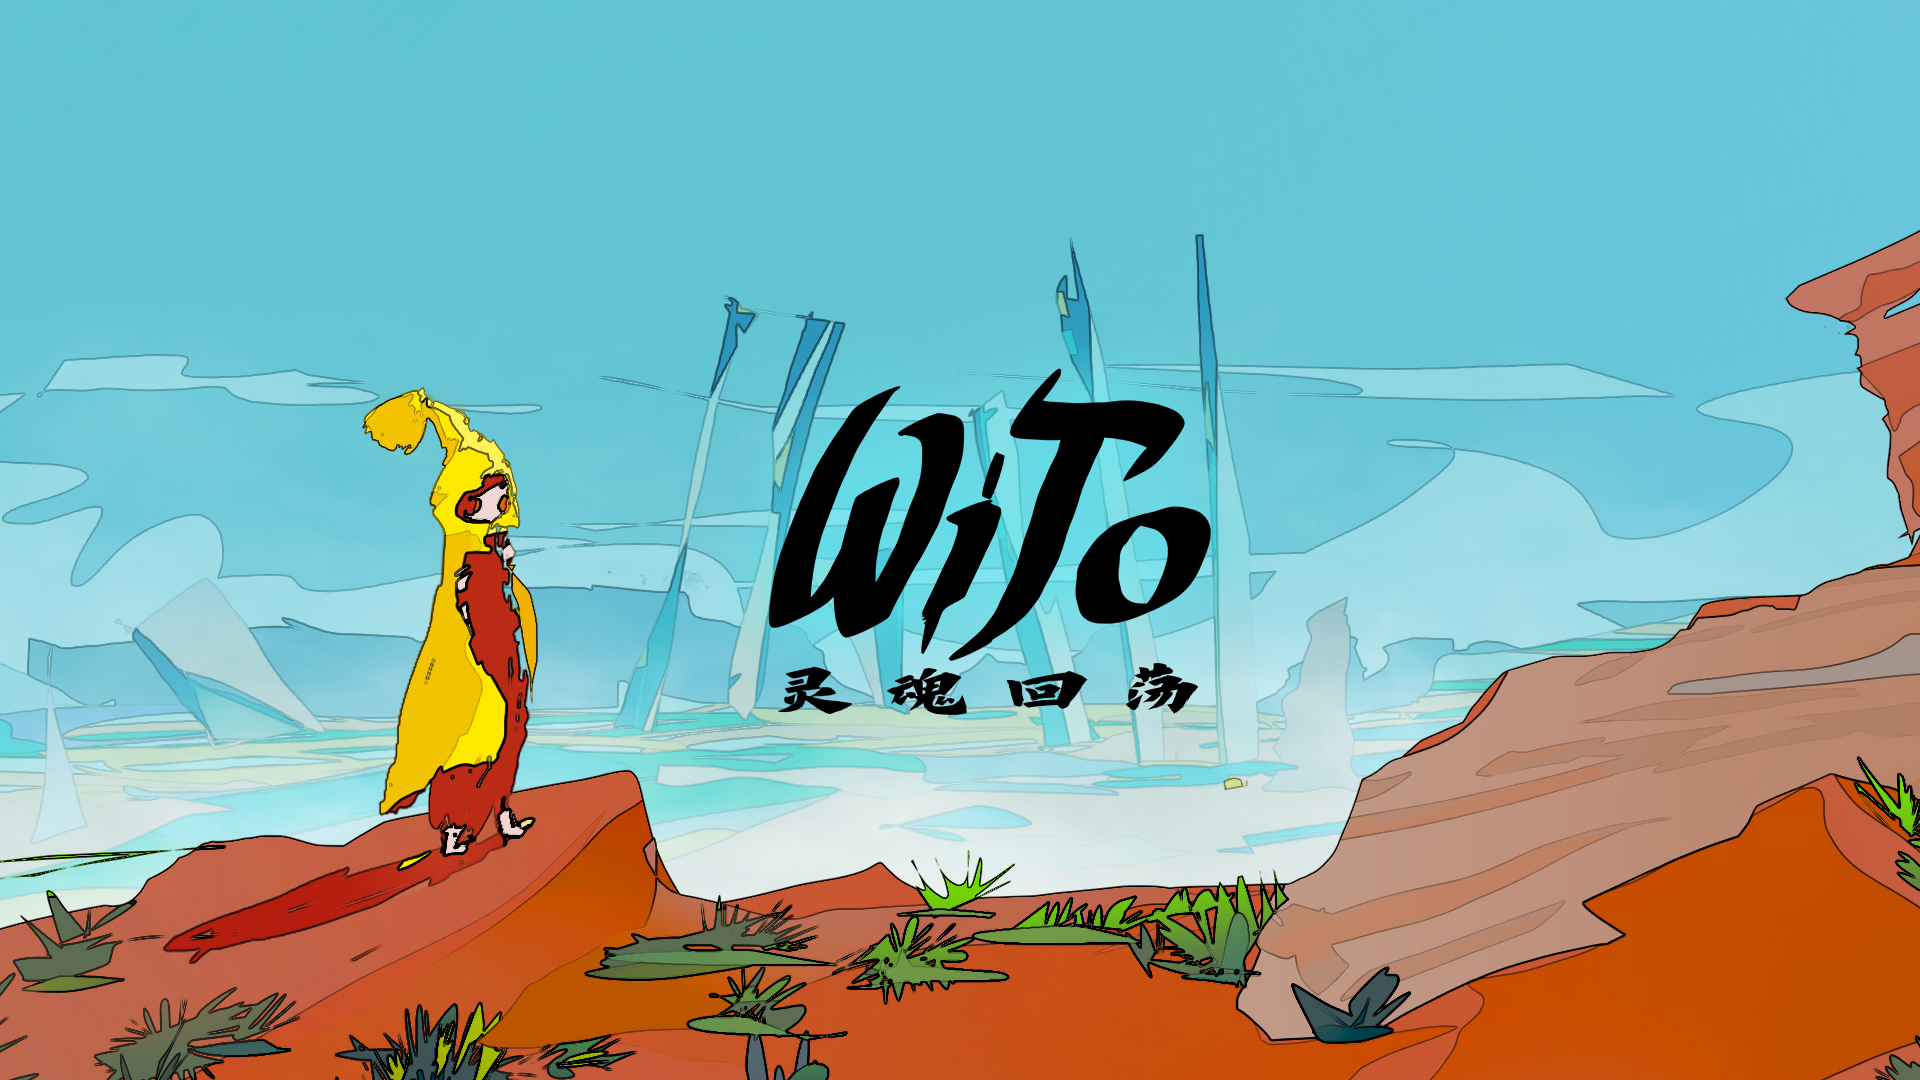 Banner of WiTo: Gema Jiwa 